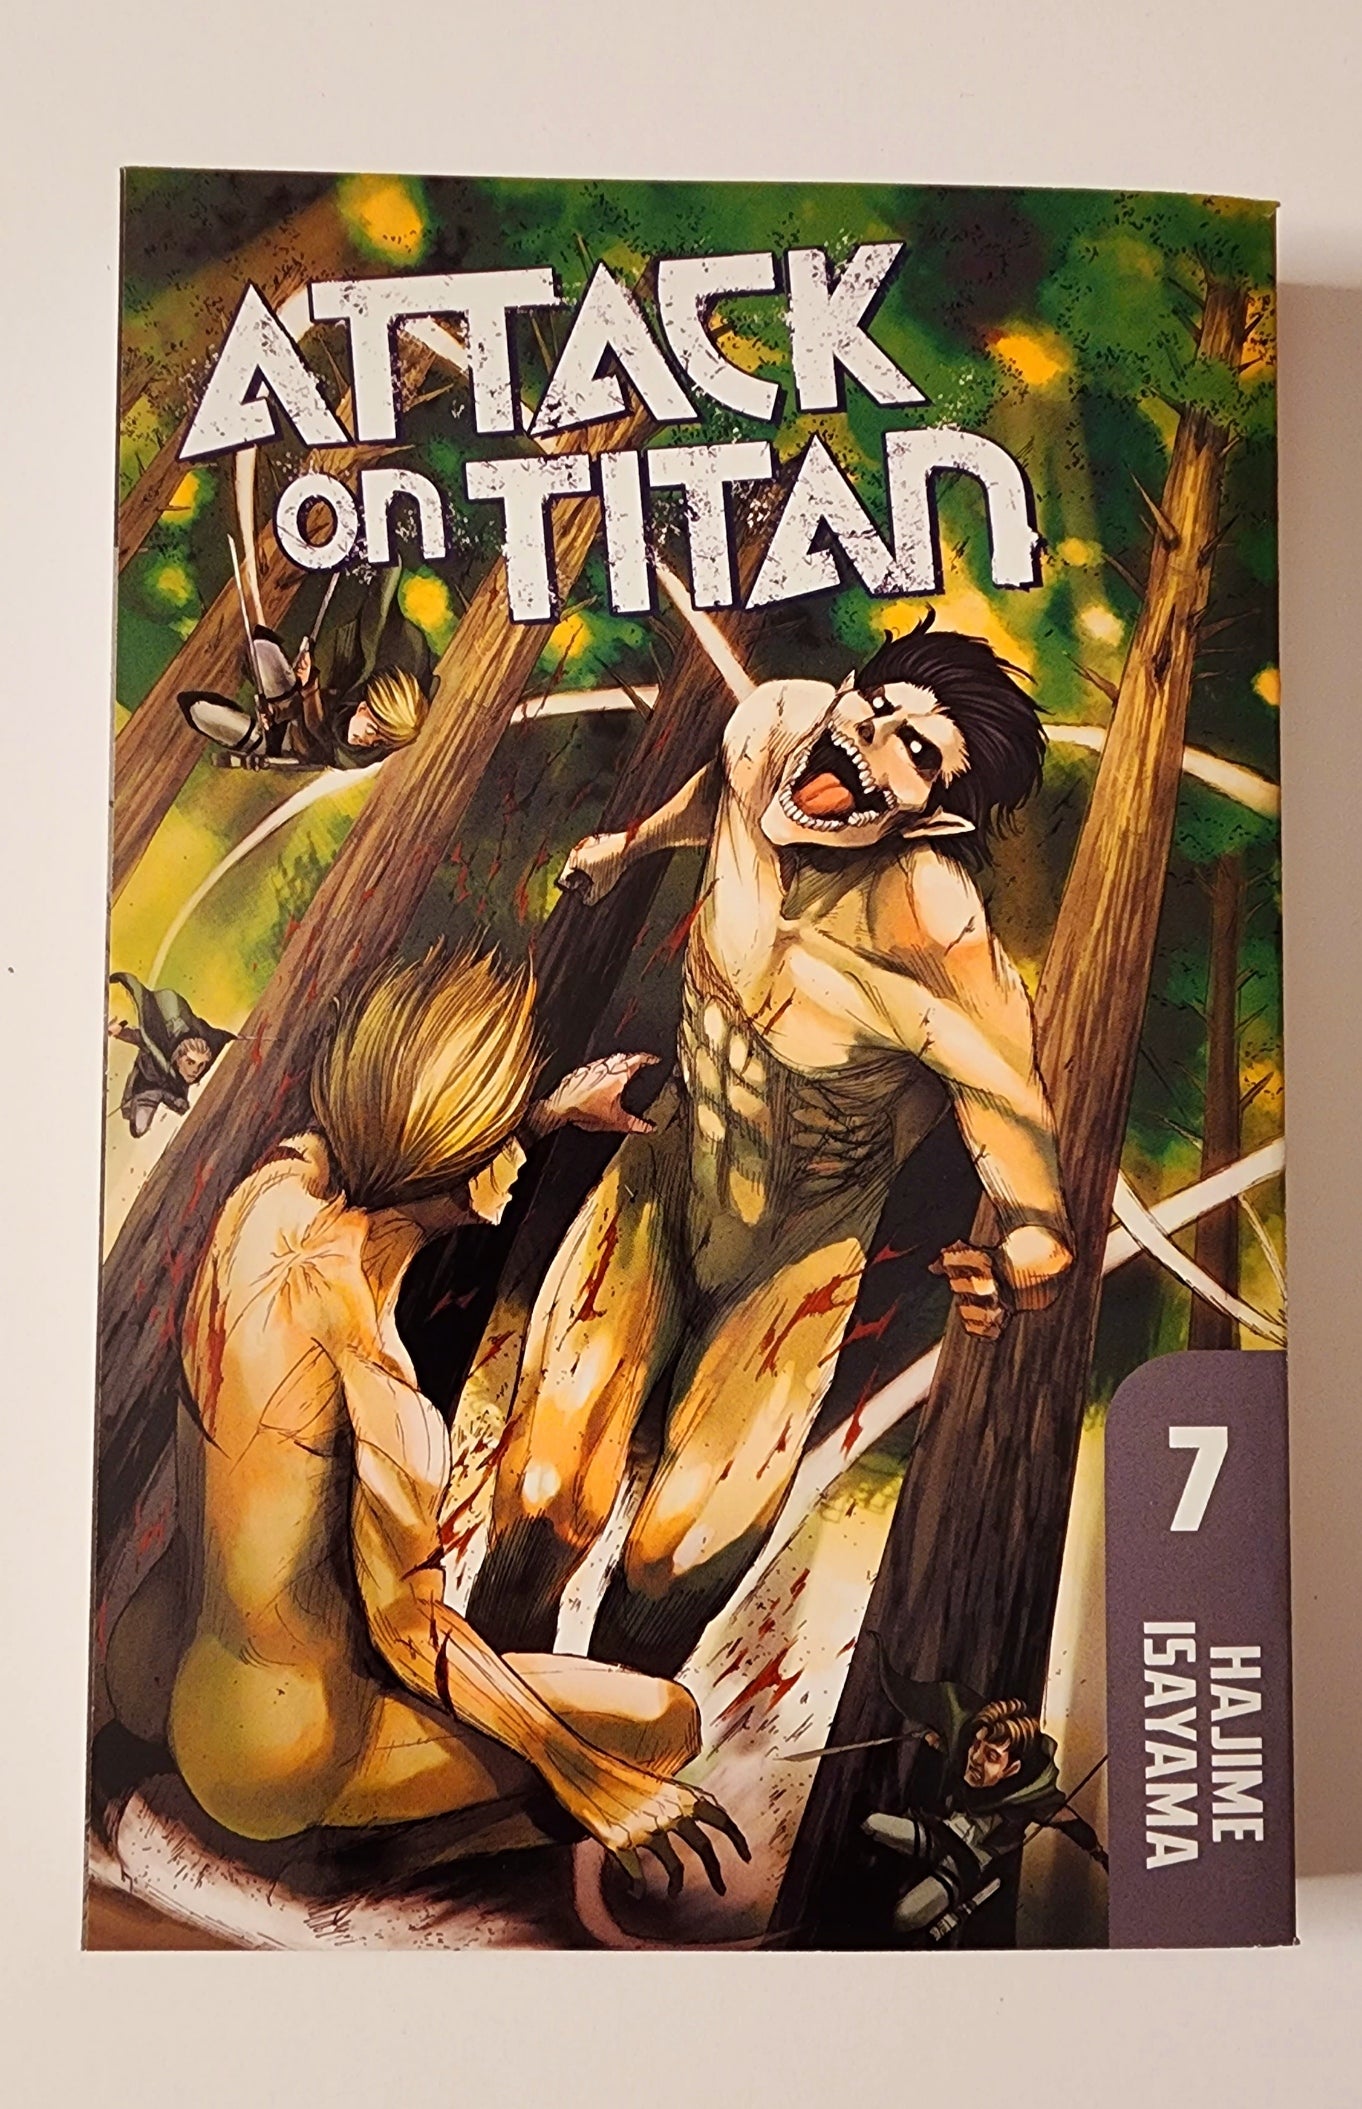 Attack on Titan Vol. 7